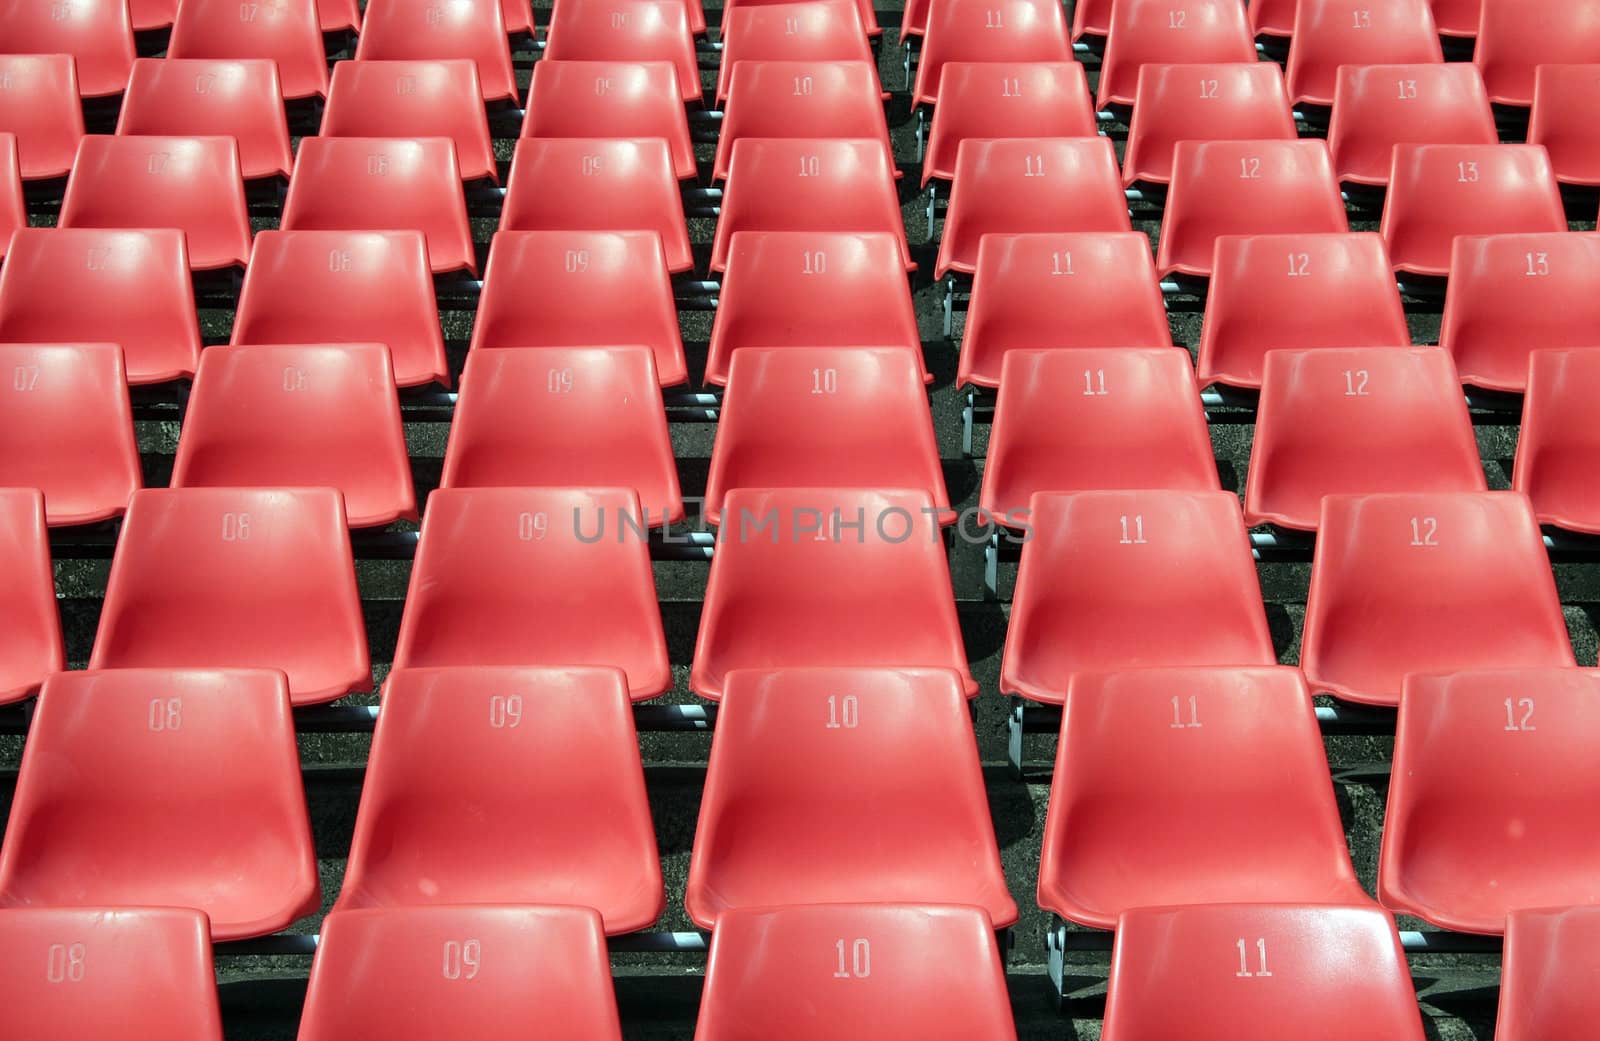 Stadium Seats by thorsten